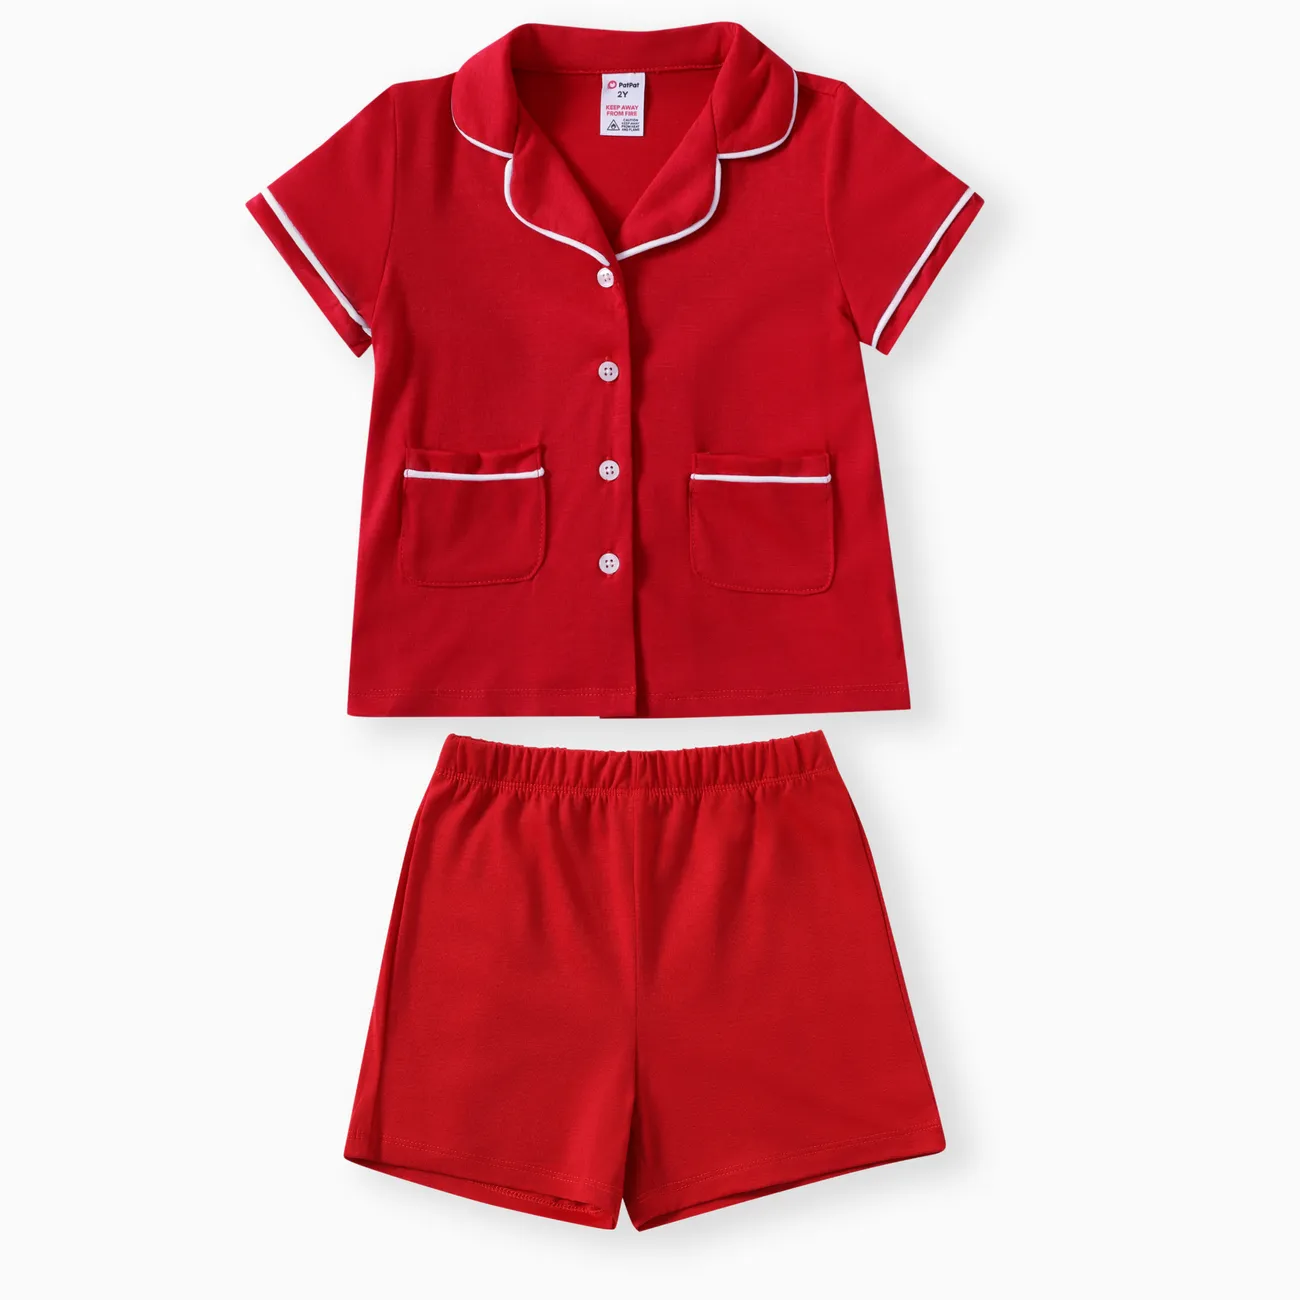 蹣跚學步/兒童男孩/女孩 2 件純色翻領睡衣套裝 紅色 big image 1